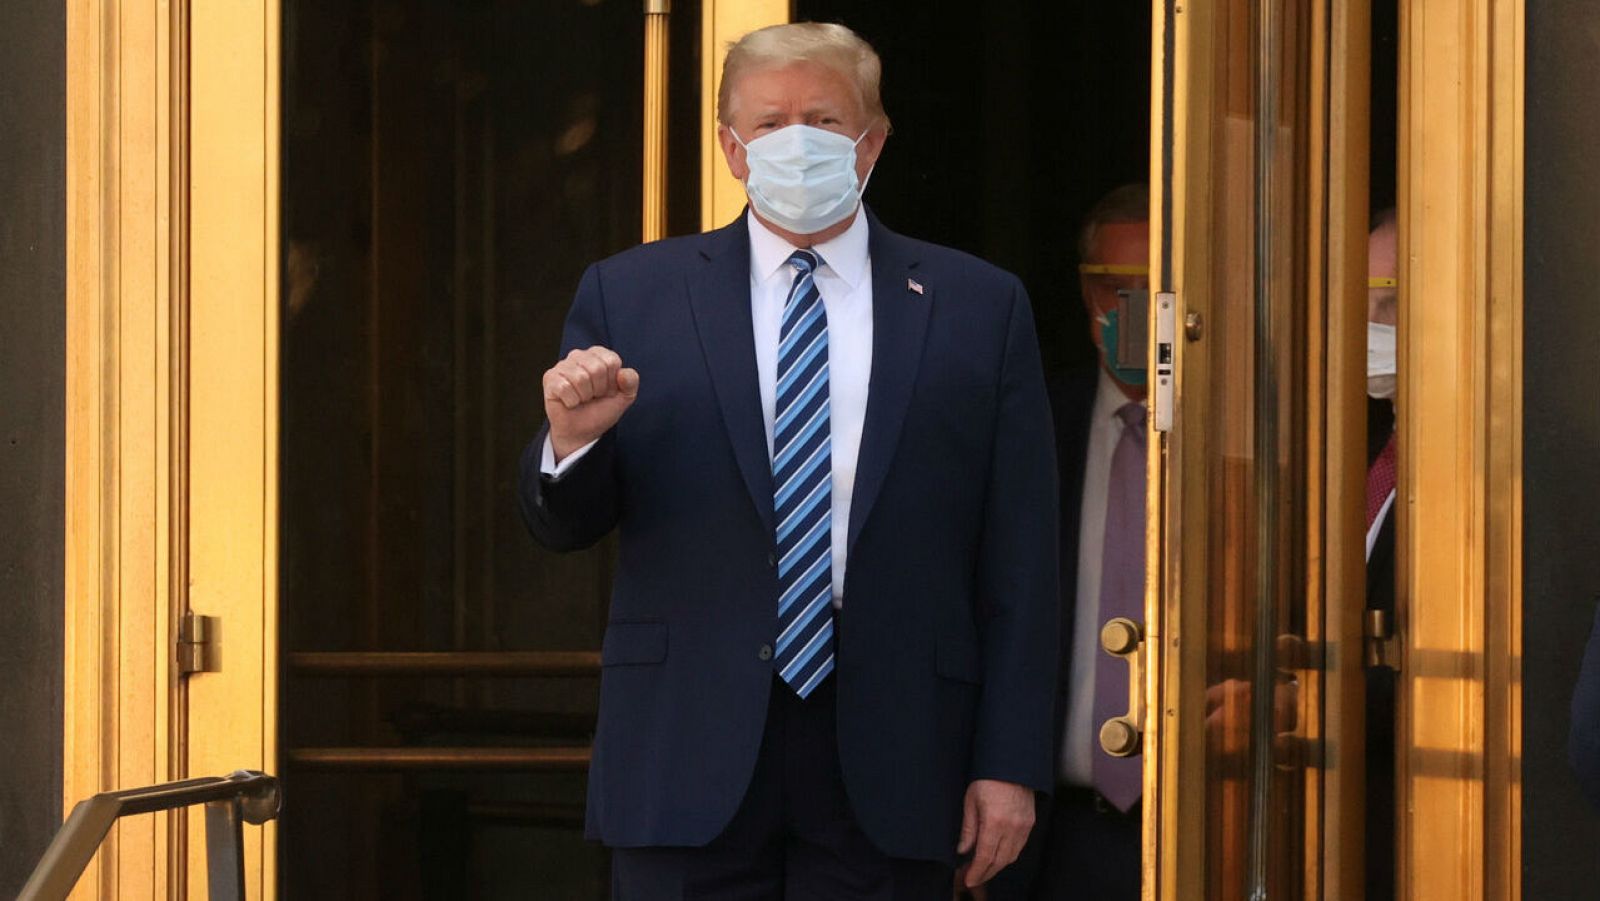 Coronavirus | Trump sale del hospital y regresa a la Casa Blanca: "No le tengan miedo a la COVID, no dejen que domine sus vidas"